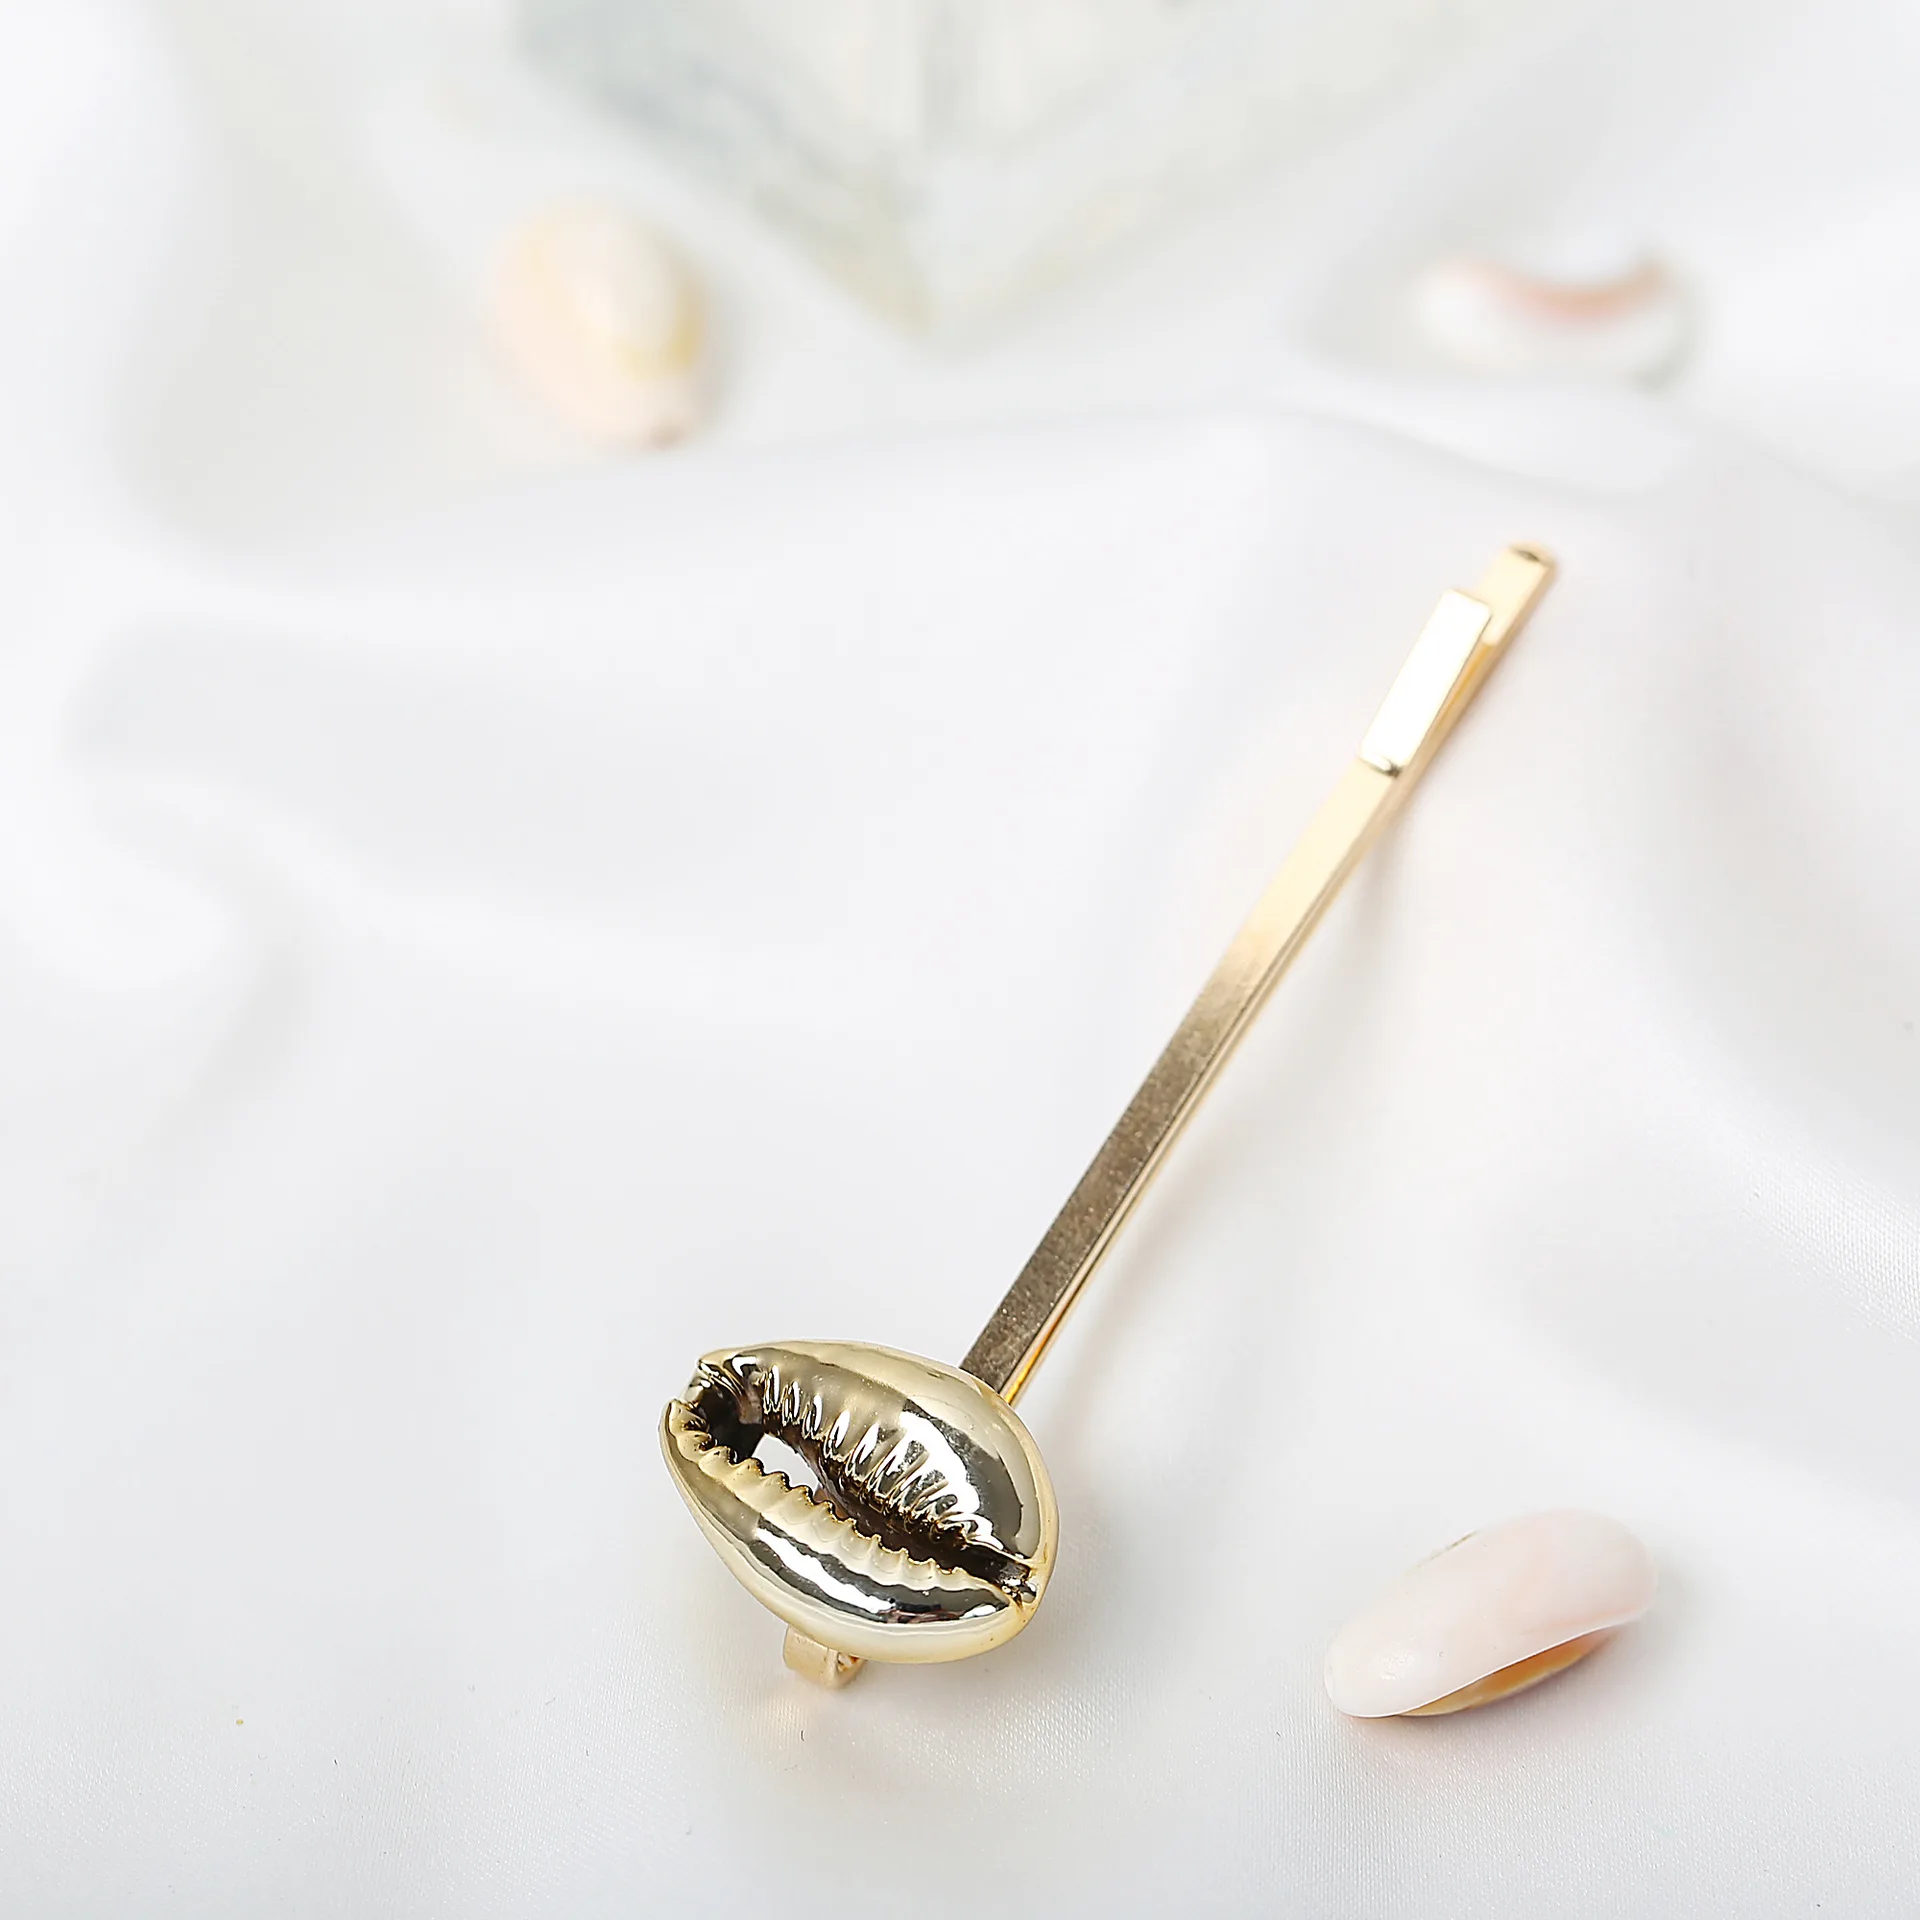 Новая модная Золотая Серебряная заколка для женщин, милый корейский дизайн, жемчужный бант, металлическая шпилька, аксессуары для укладки волос - Окраска металла: ins004-2